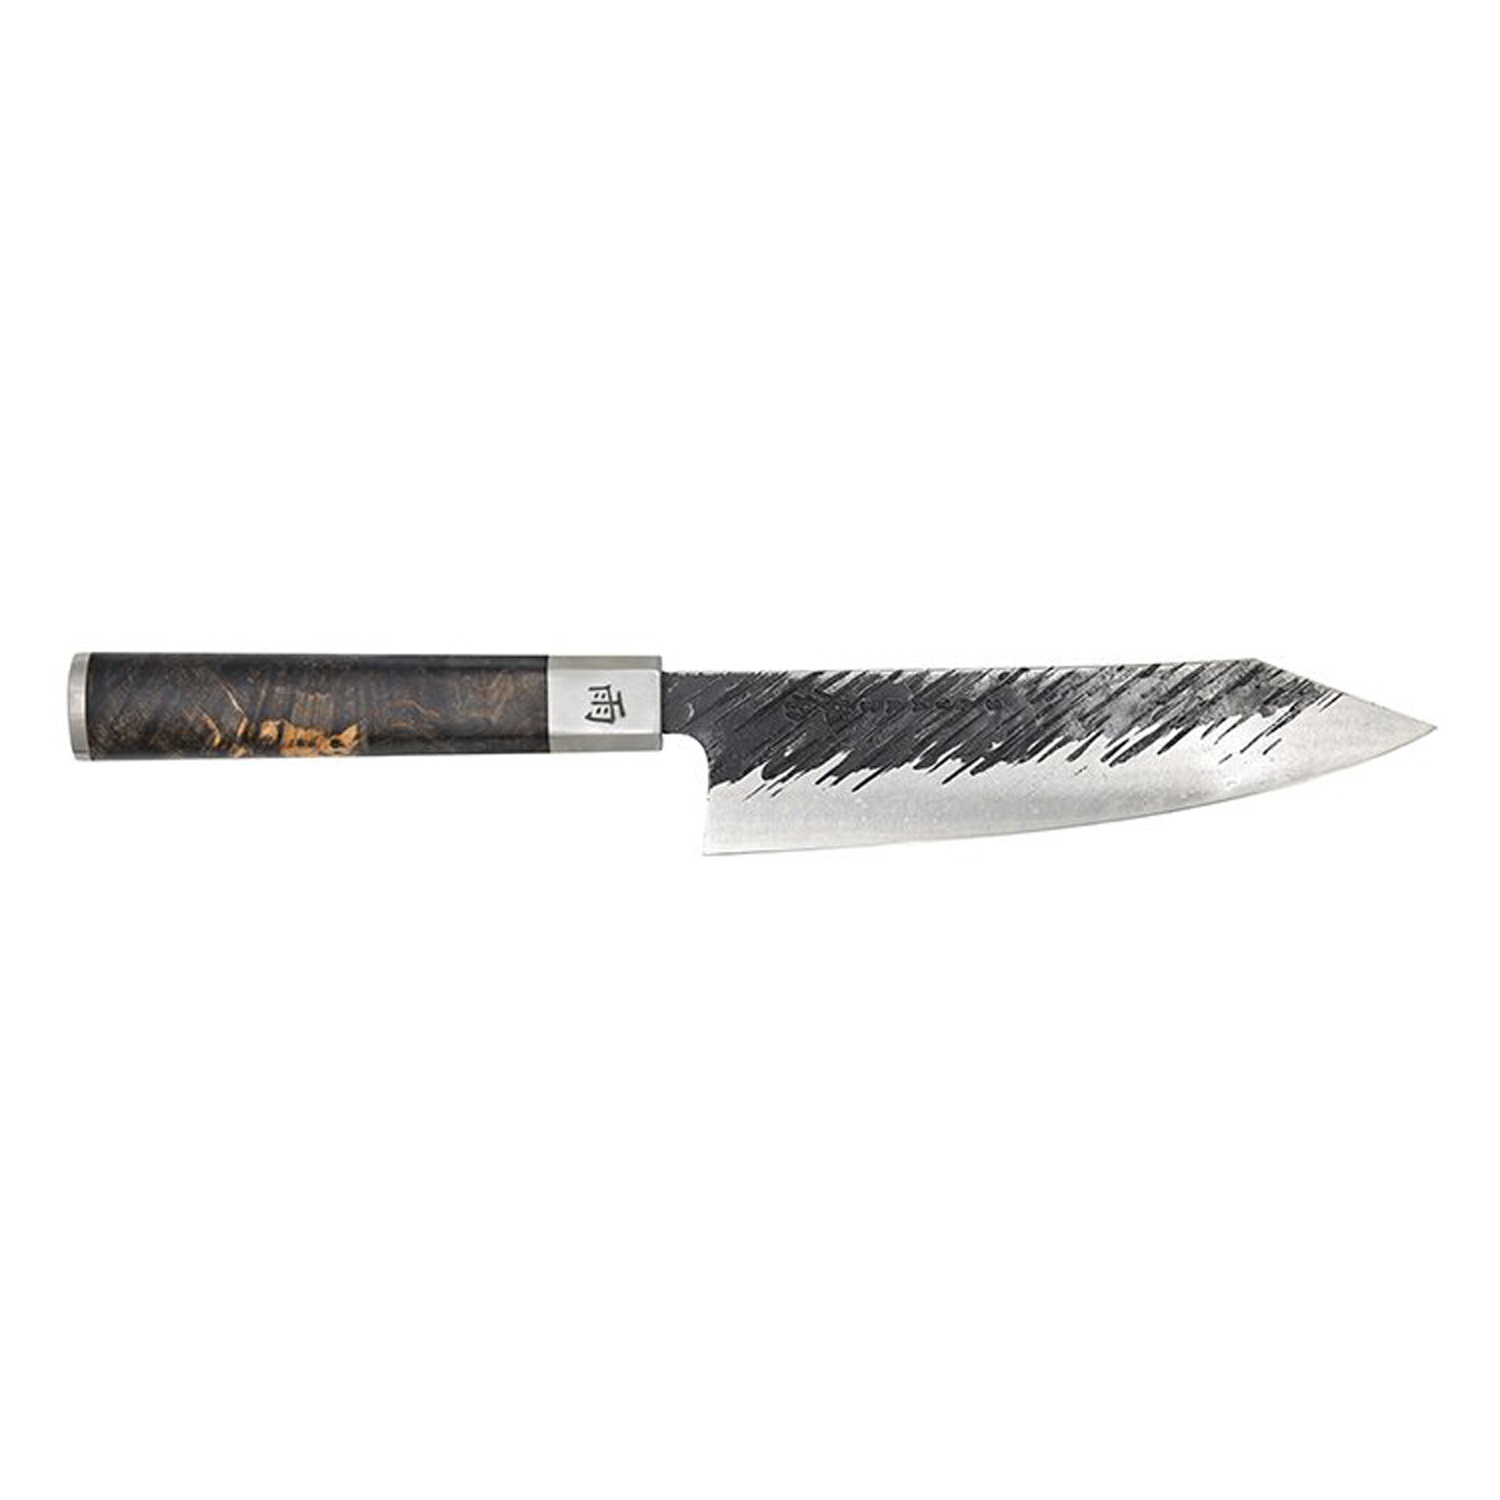 https://api-prod.royaldesign.se/api/products/image/2/satake-ame-bunka-japanese-chef-knife-15-cm-0